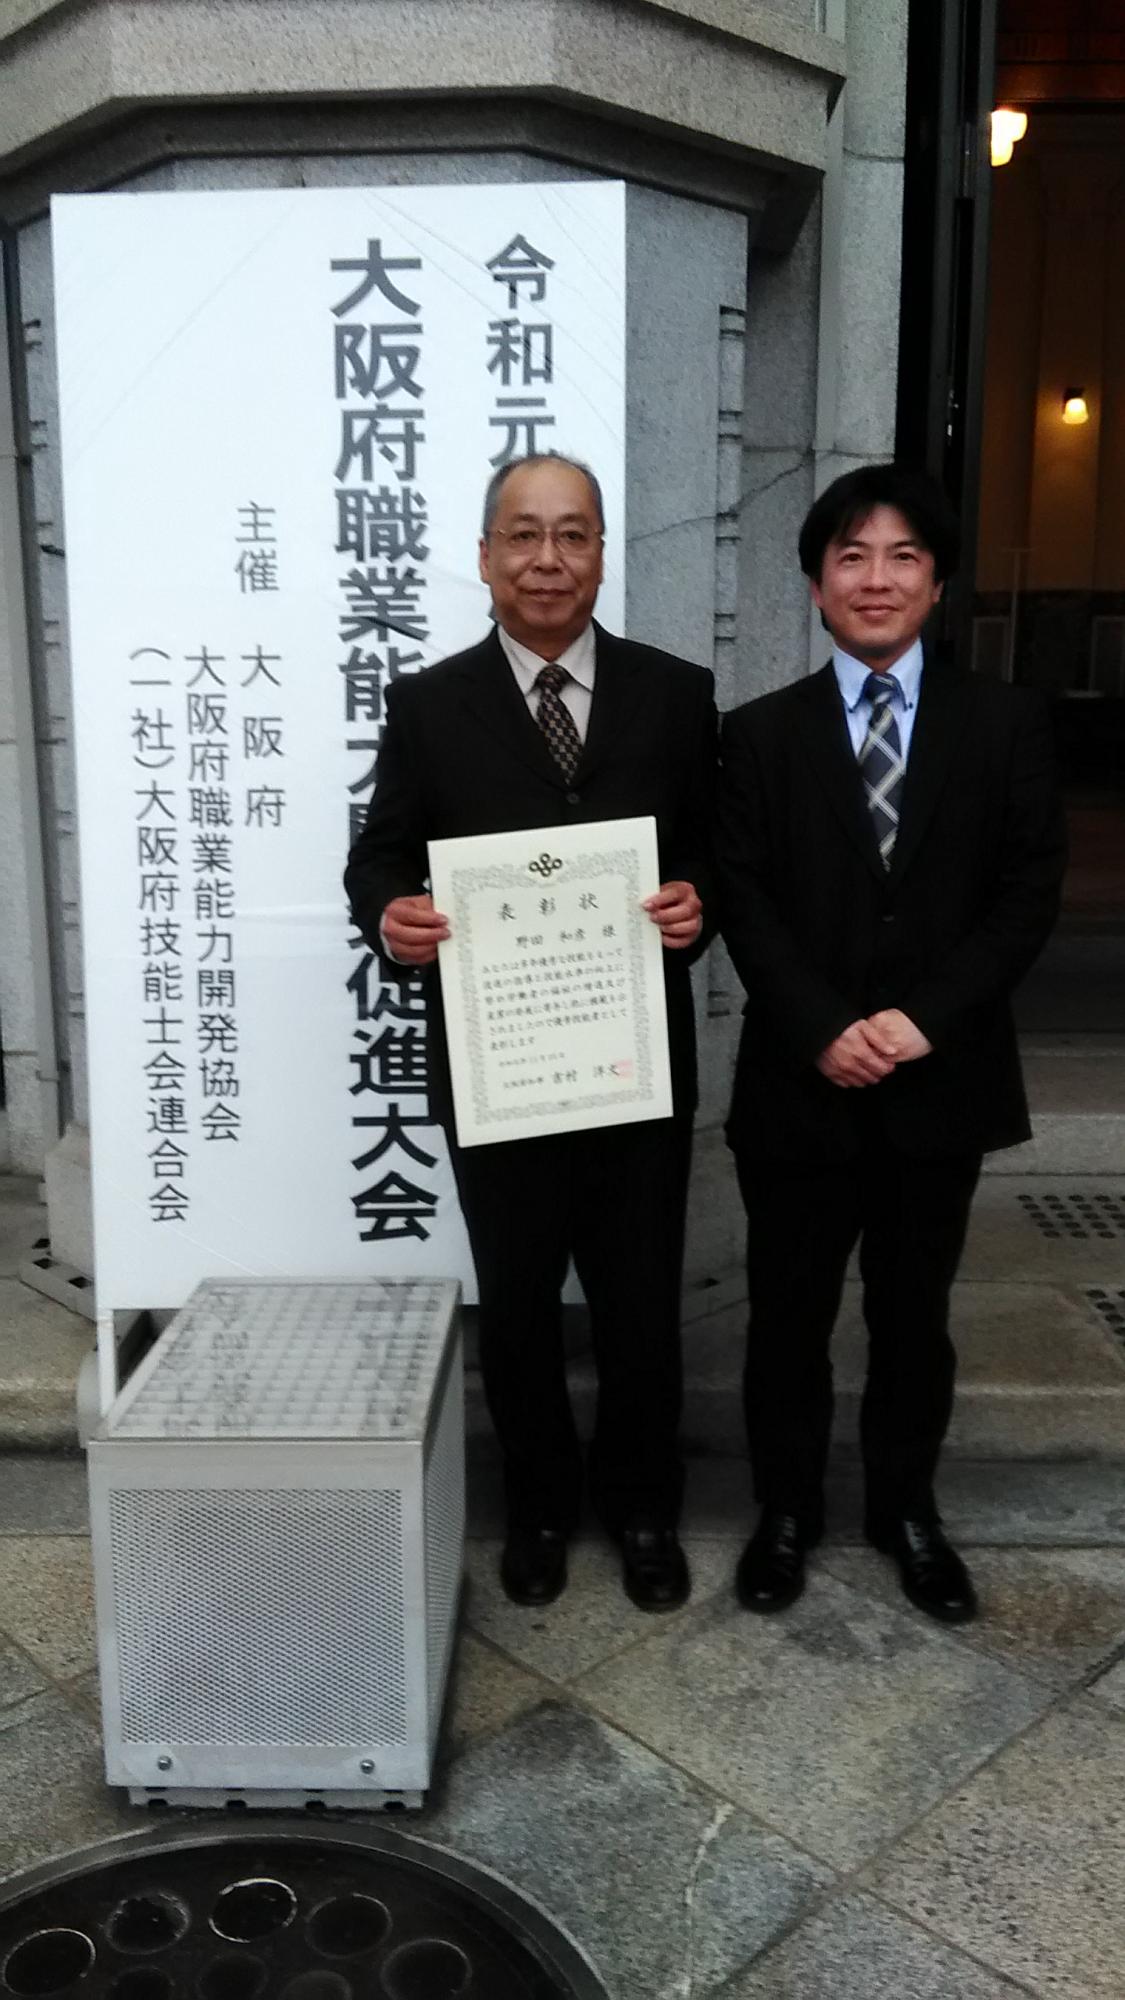 表彰を受けた智頭電機株式会社の野田さん（左）と技能検定推進貢献し、感謝状を受けた同社の原田さん（右）